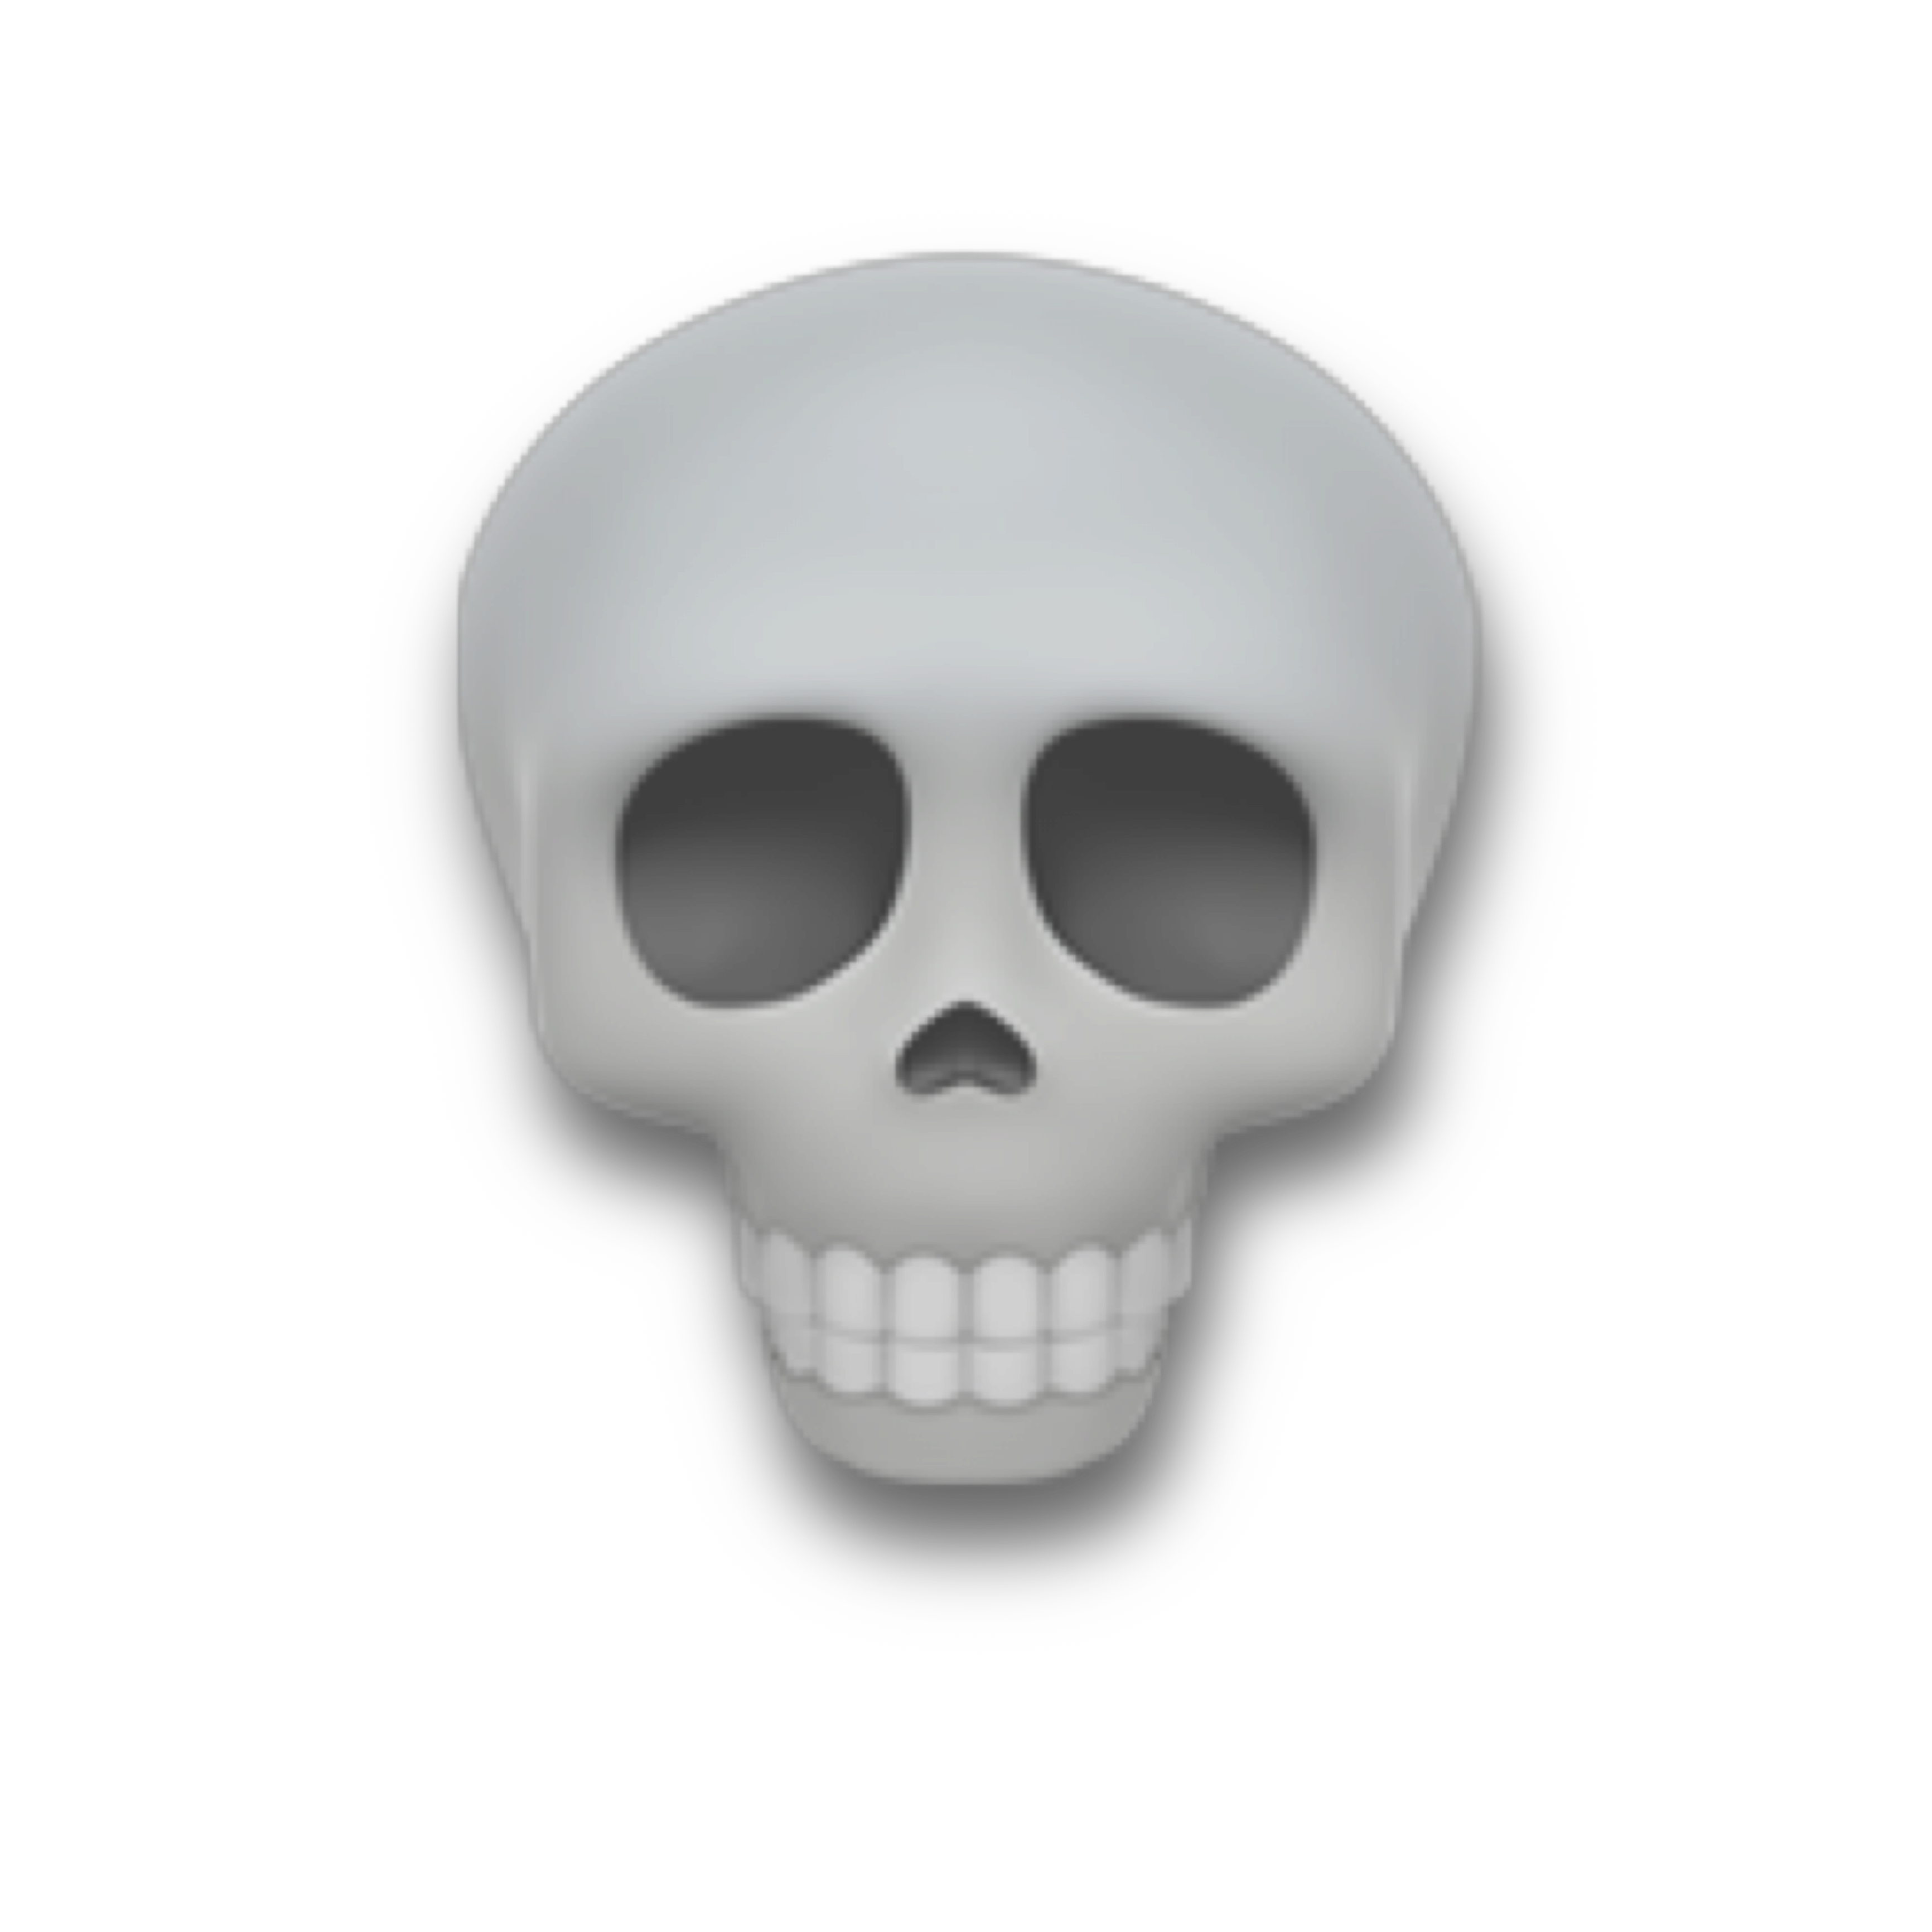 Download PNG image - Skull Emoji PNG File 